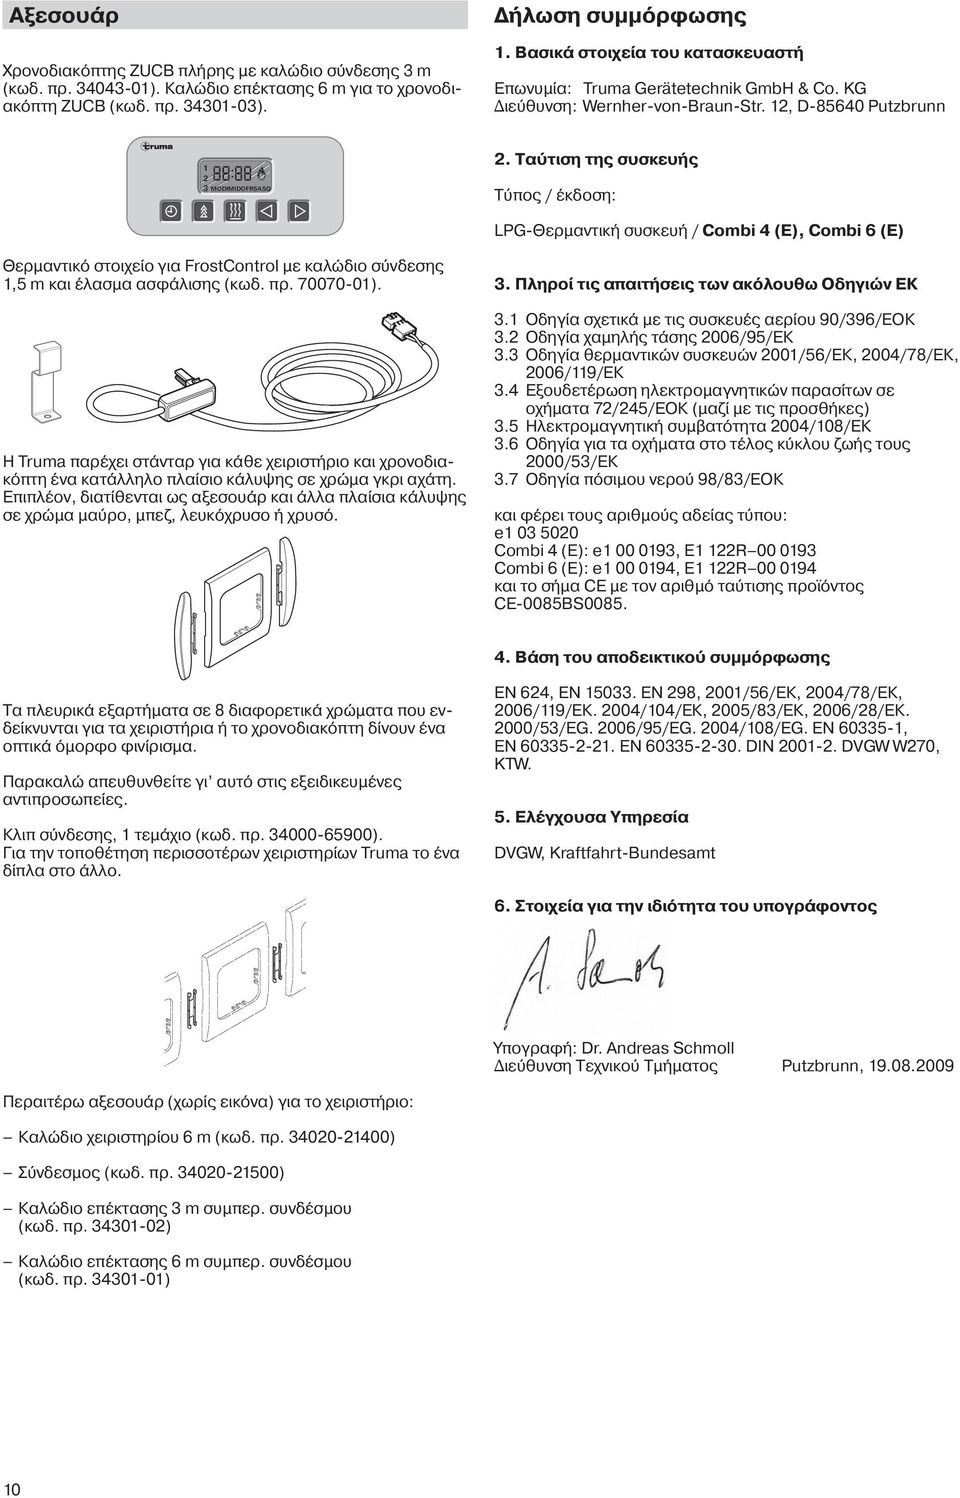 Ταύτιση της συσκευής Τύπος / έκδοση: LPG-Θερμαντική συσκευή / Combi 4 (E), Combi 6 (E) Θερμαντικό στοιχείο για FrostControl με καλώδιο σύνδεσης 1,5 m και έλασμα ασφάλισης (κωδ. πρ. 70070-01).